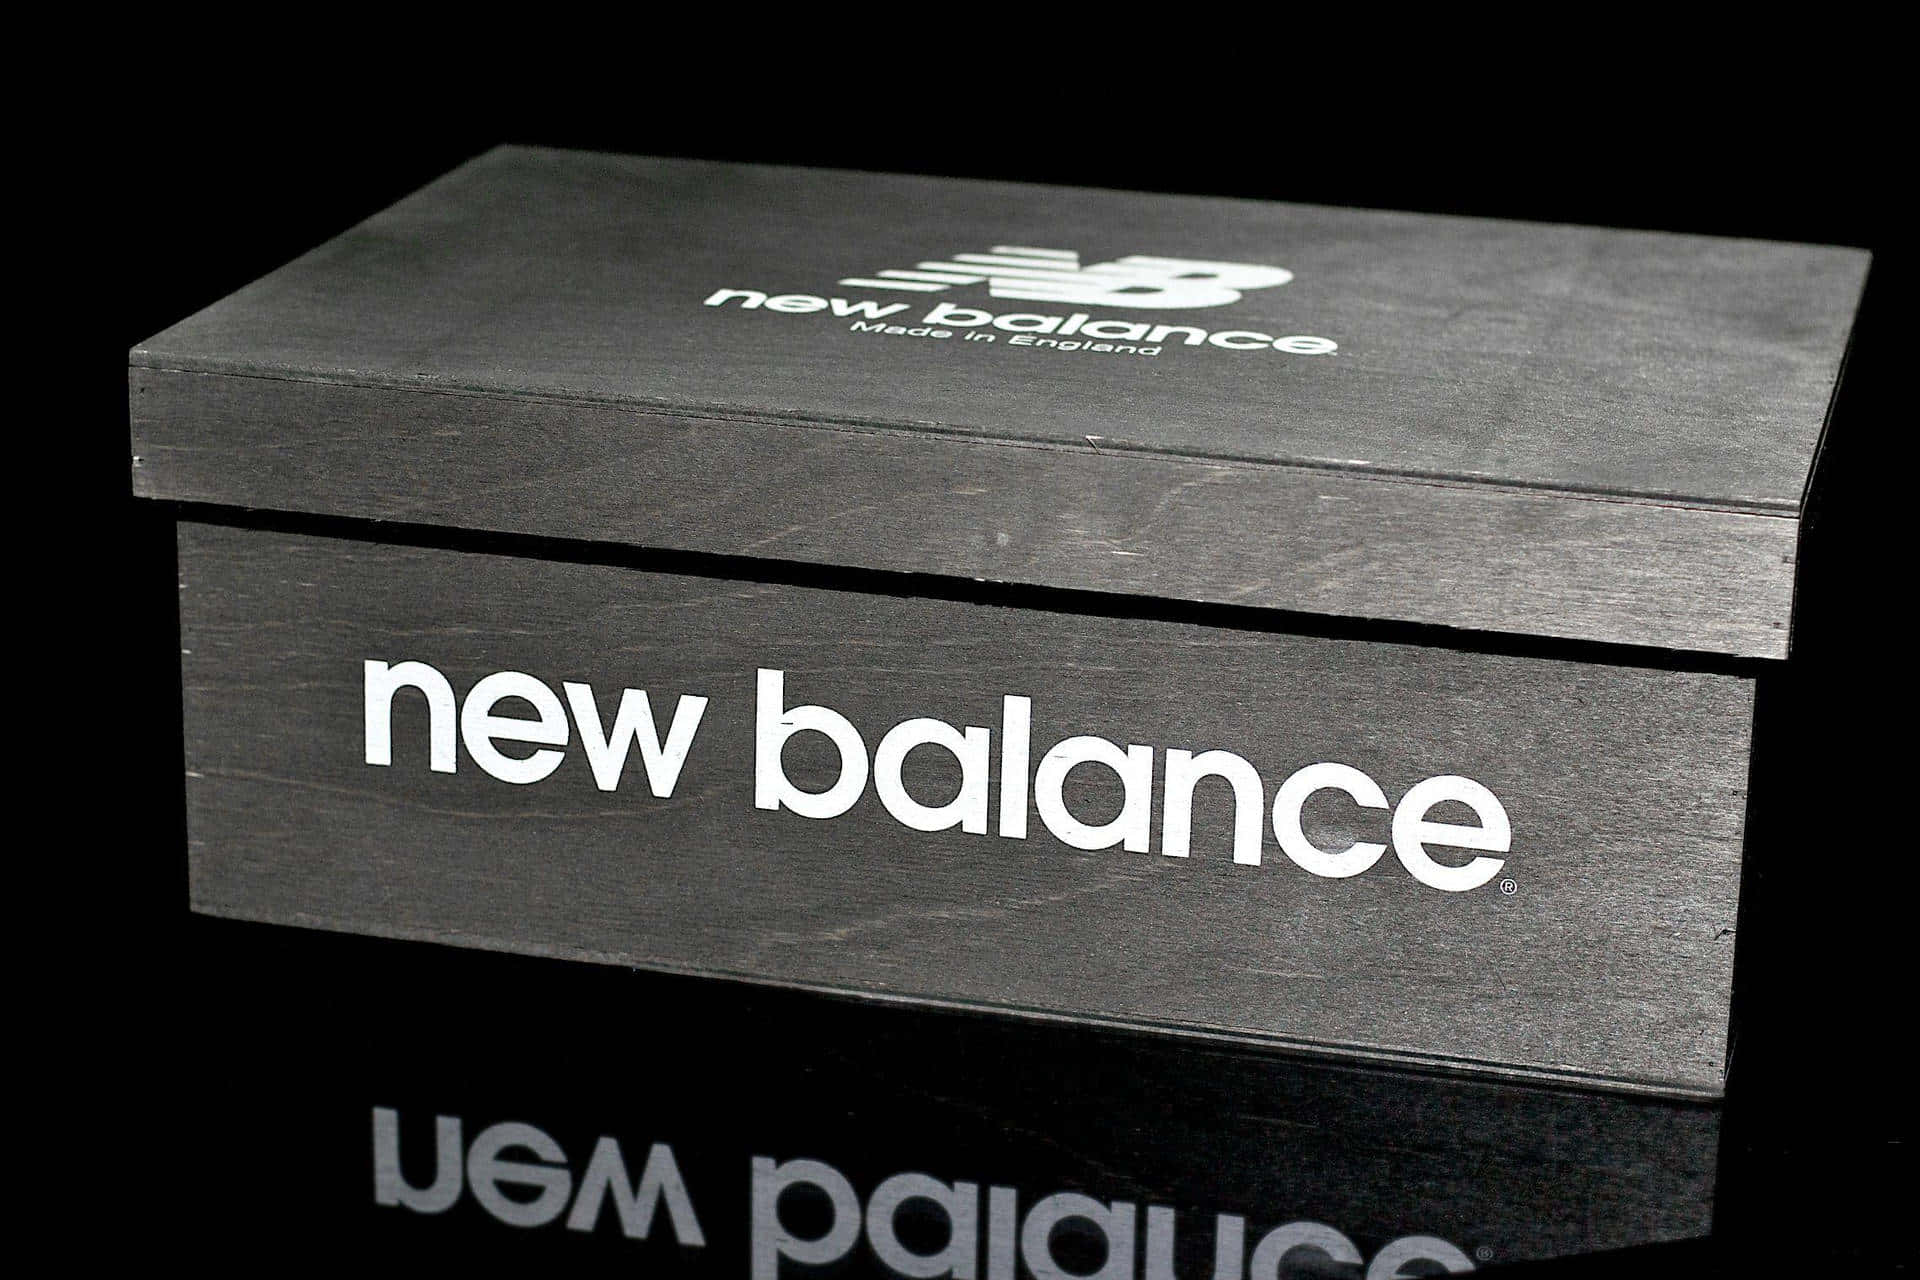 Newbalance Lifestyle (stile Di Vita New Balance)